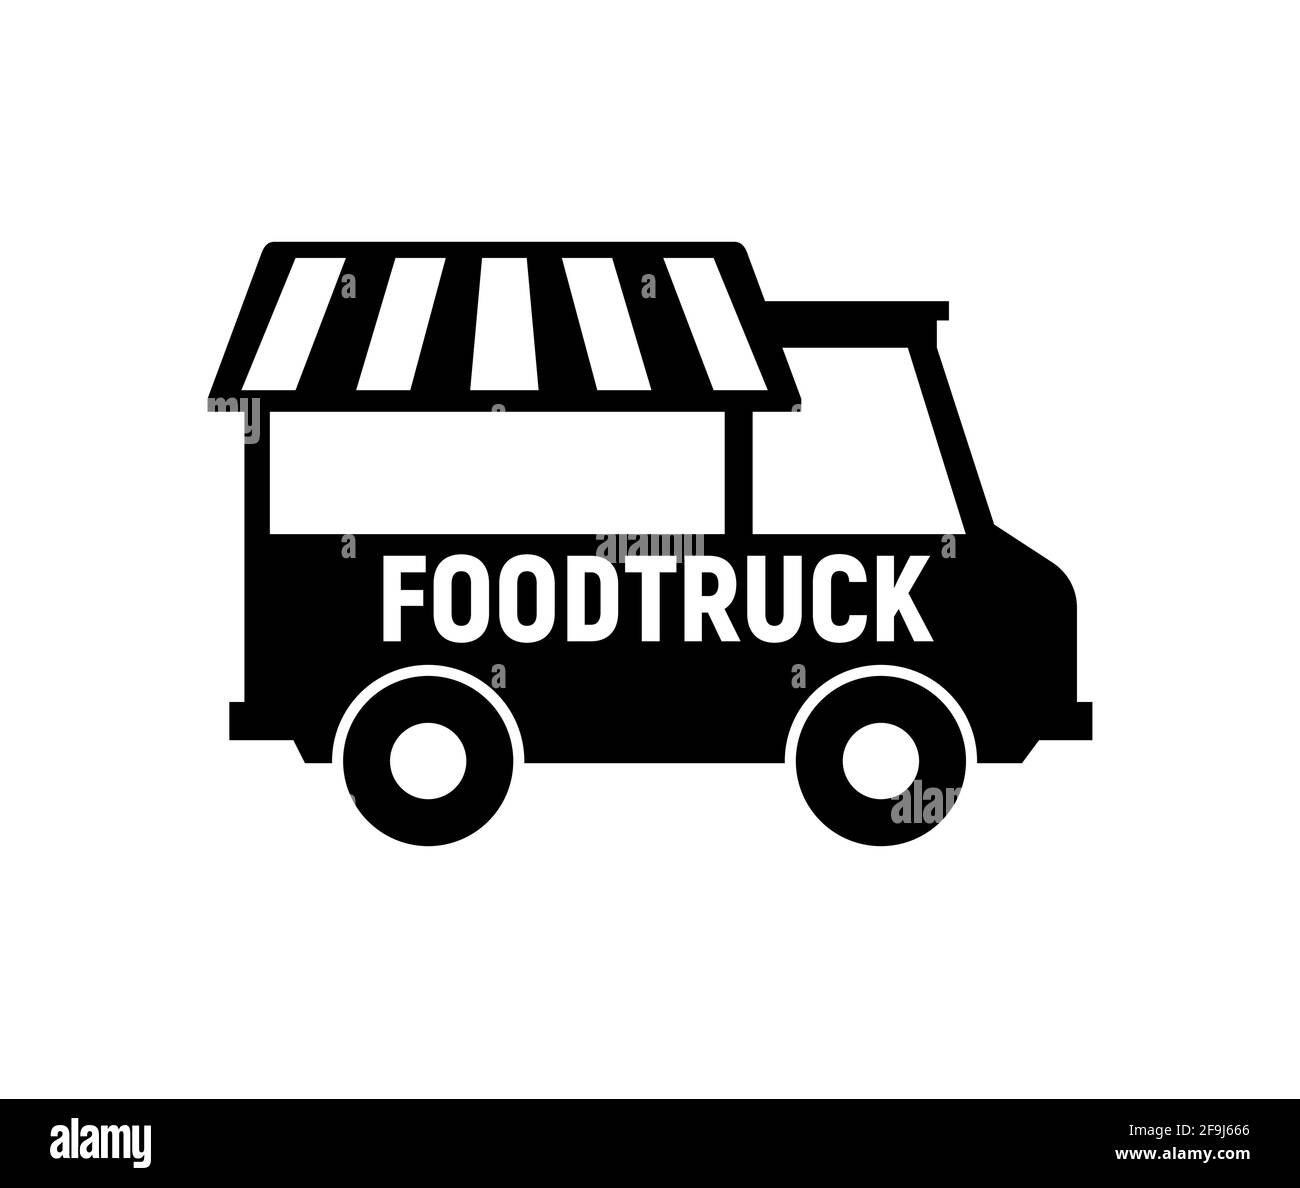 Food truck logo icon. Vector foodtruck kitchen street van design icon Stock Vector